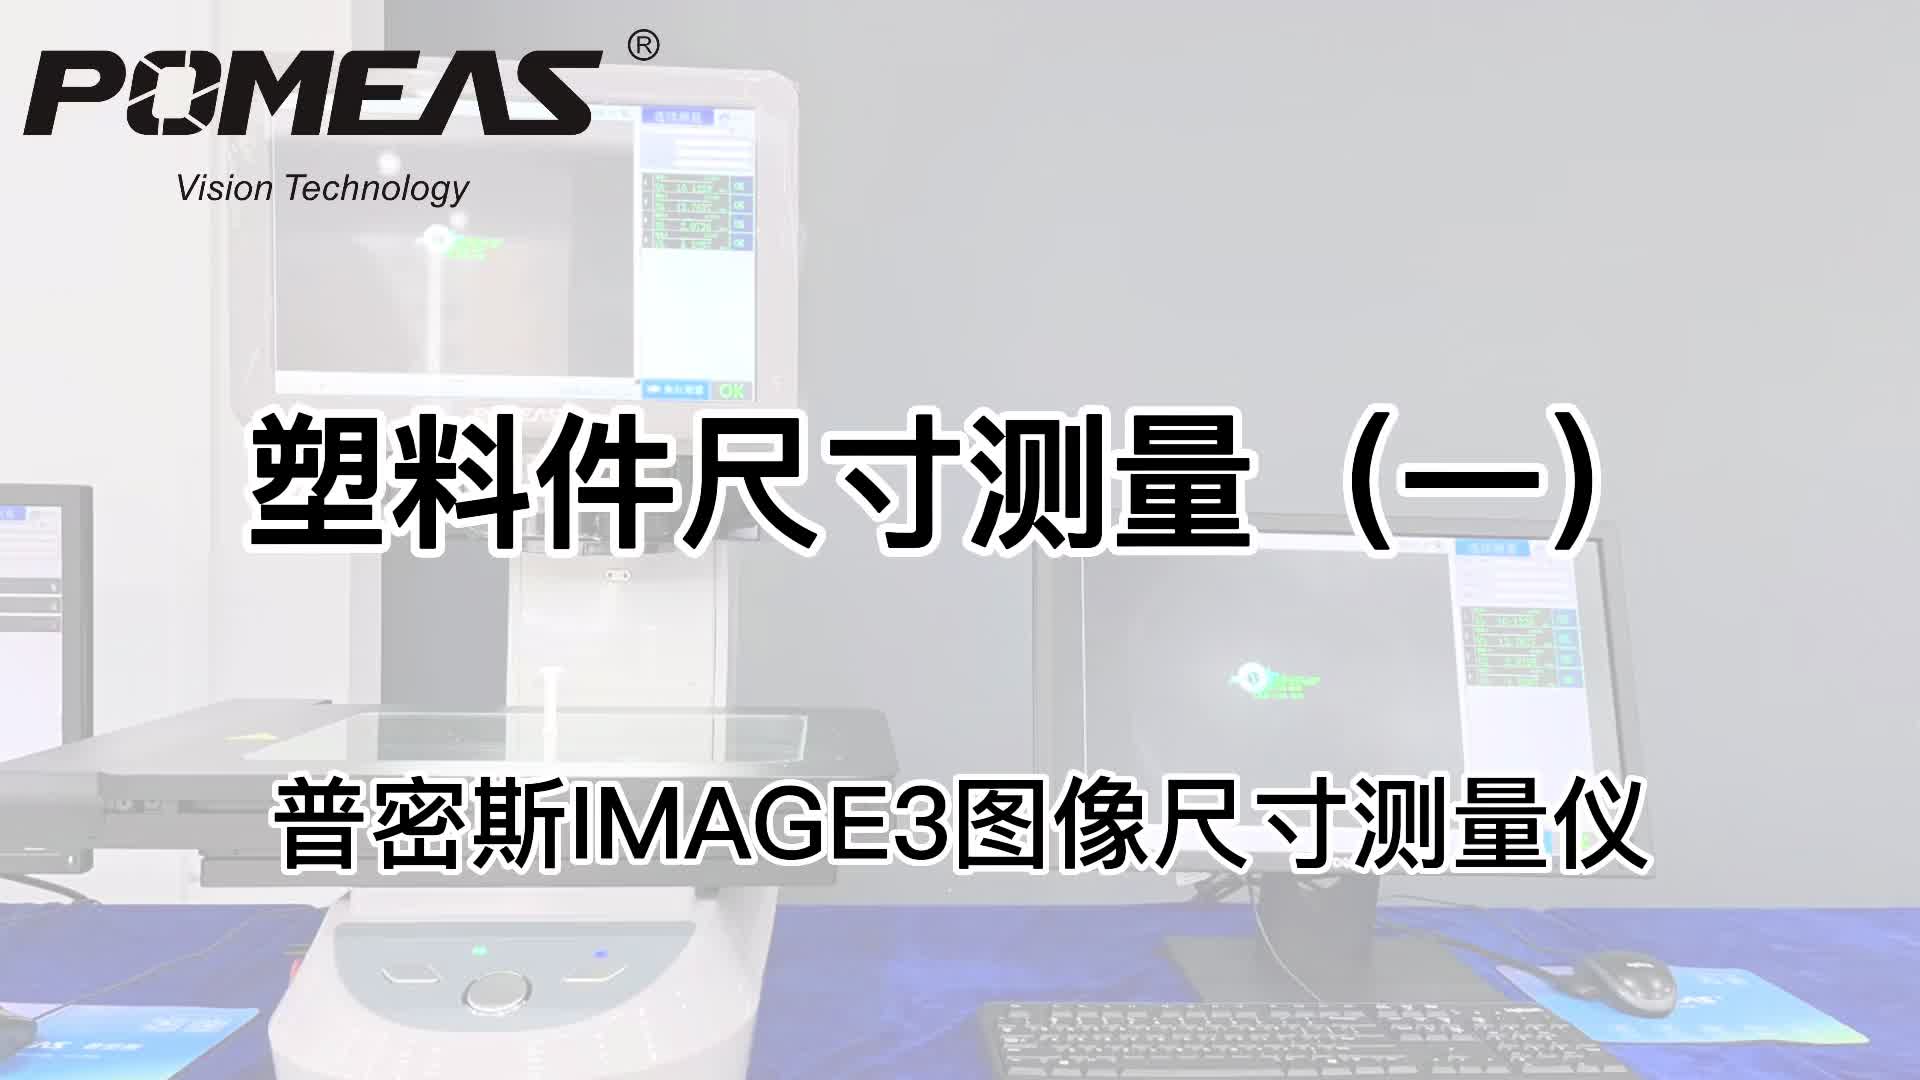 IMAGE3系列图像测量仪应用|塑料件尺寸测量# 图像测量仪#视觉检测 #塑料件# 